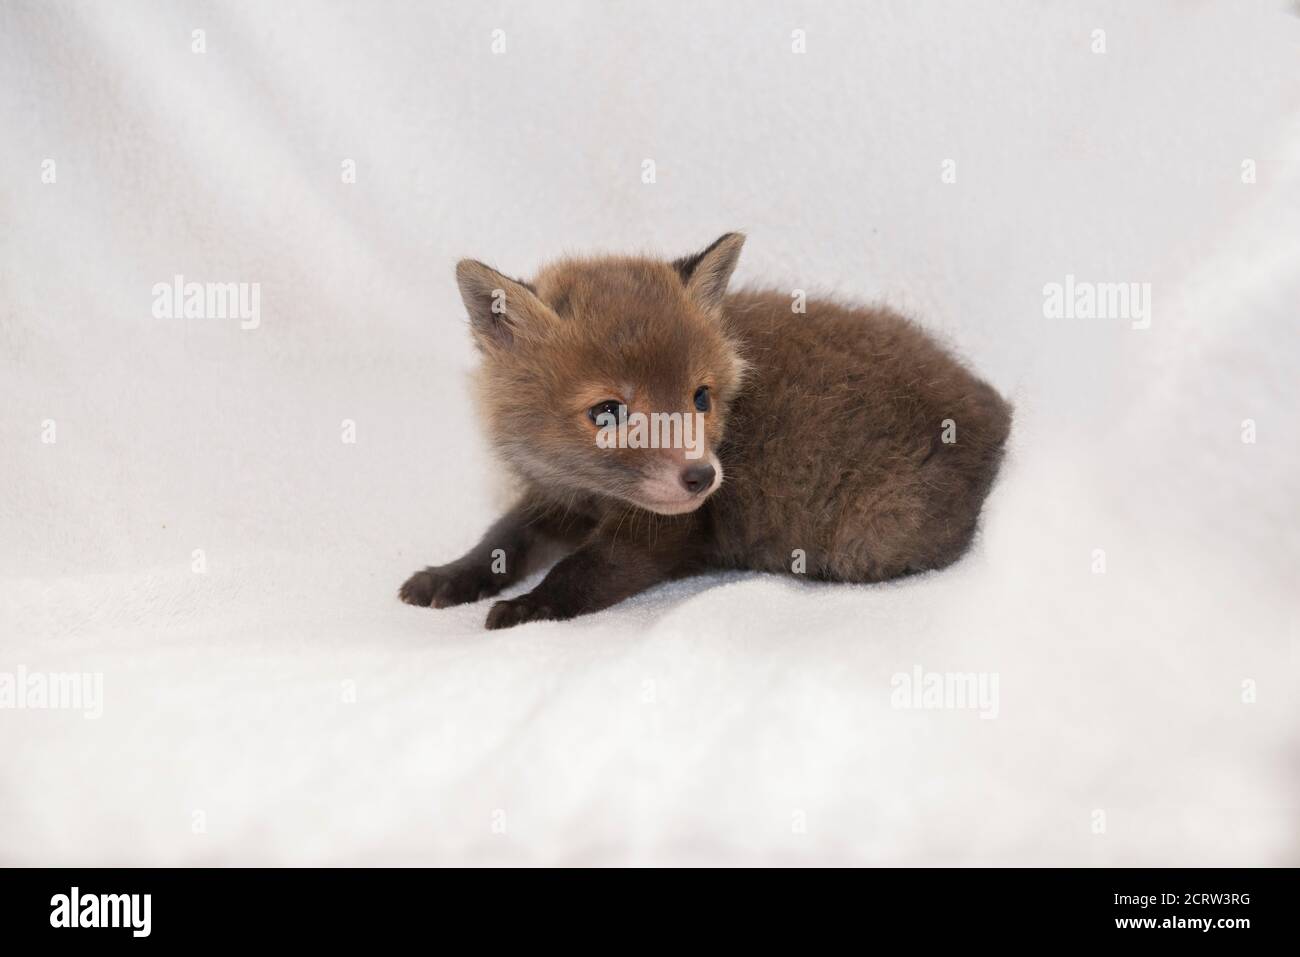 Fuchs-Junge, ein Monat altes Baby, auf einer weißen Decke liegend Stockfoto